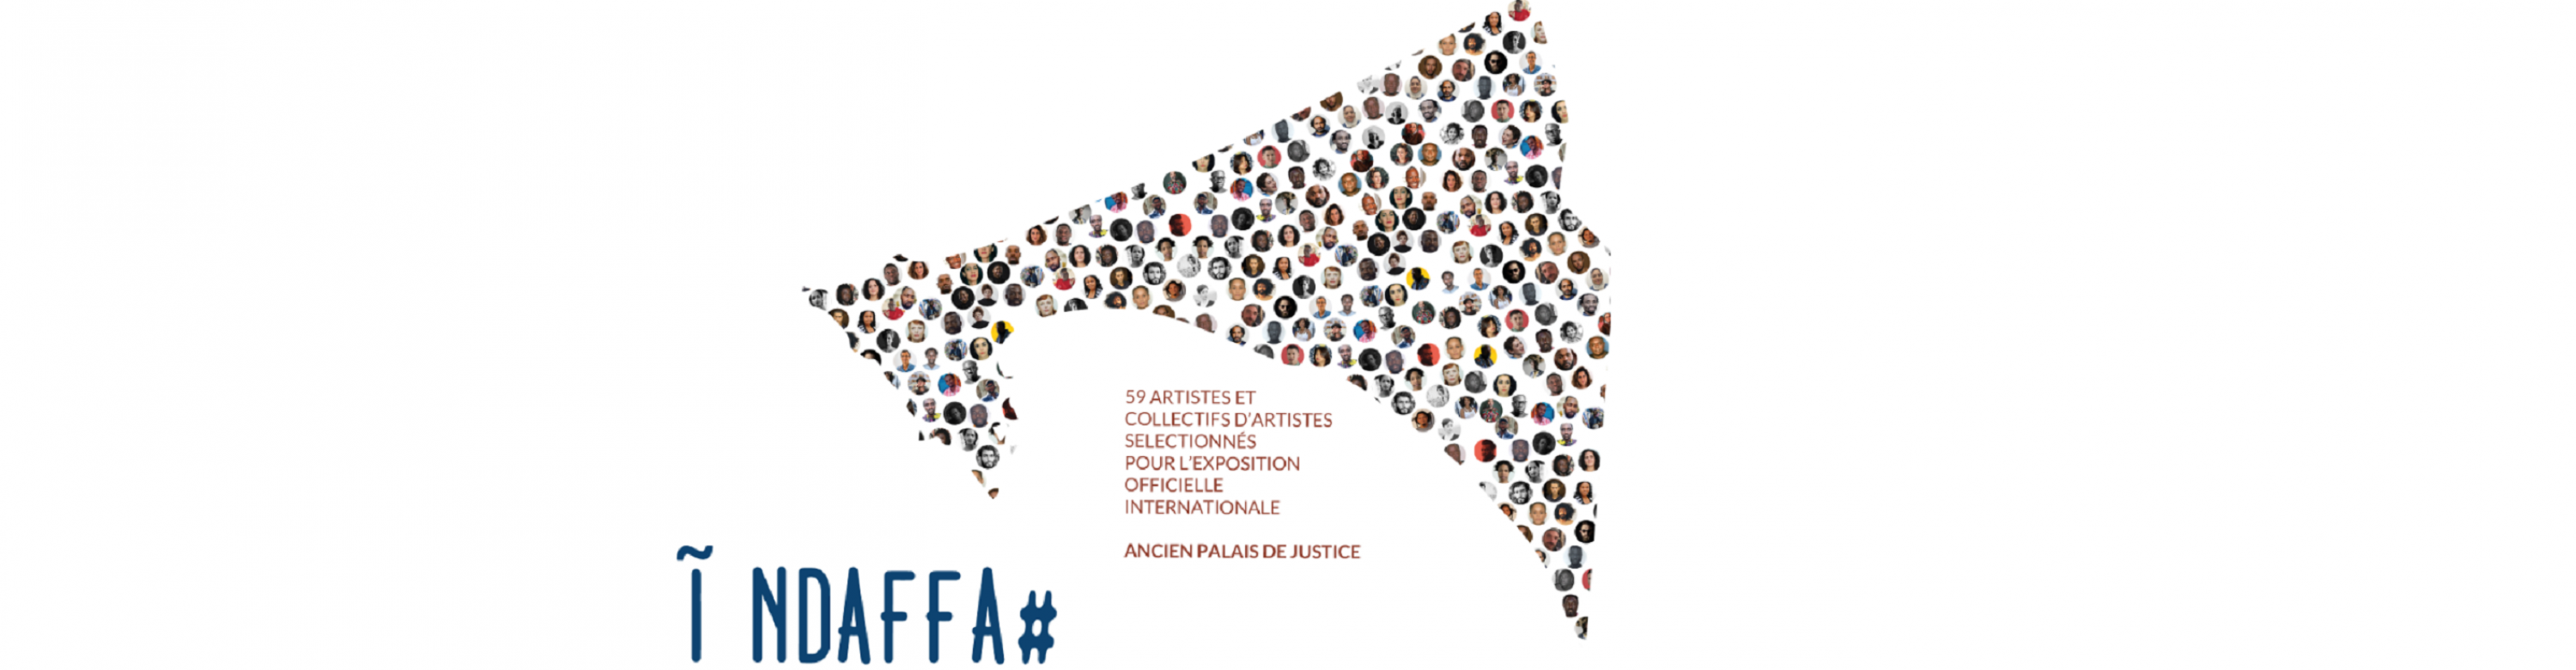 Biennale de Dak'Art 2022 : la culture et l'art vecteurs de coopération internationale